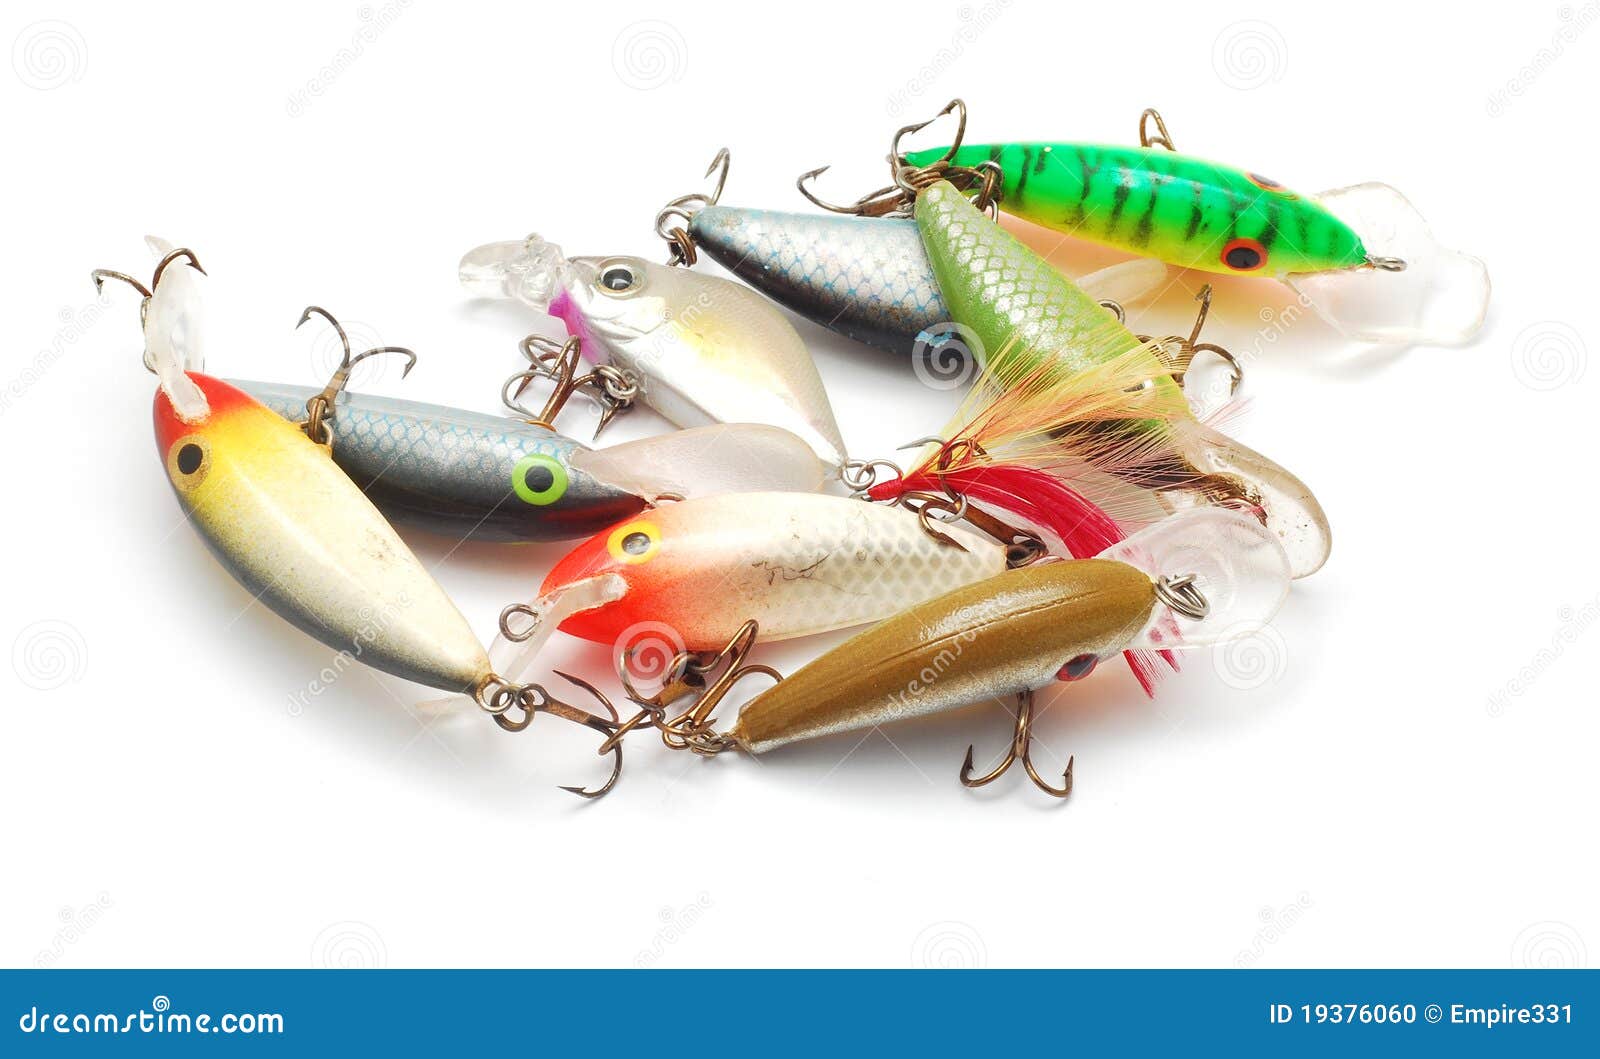 Fishing lures stock photo. Image of tools, bait, hooks - 19376060